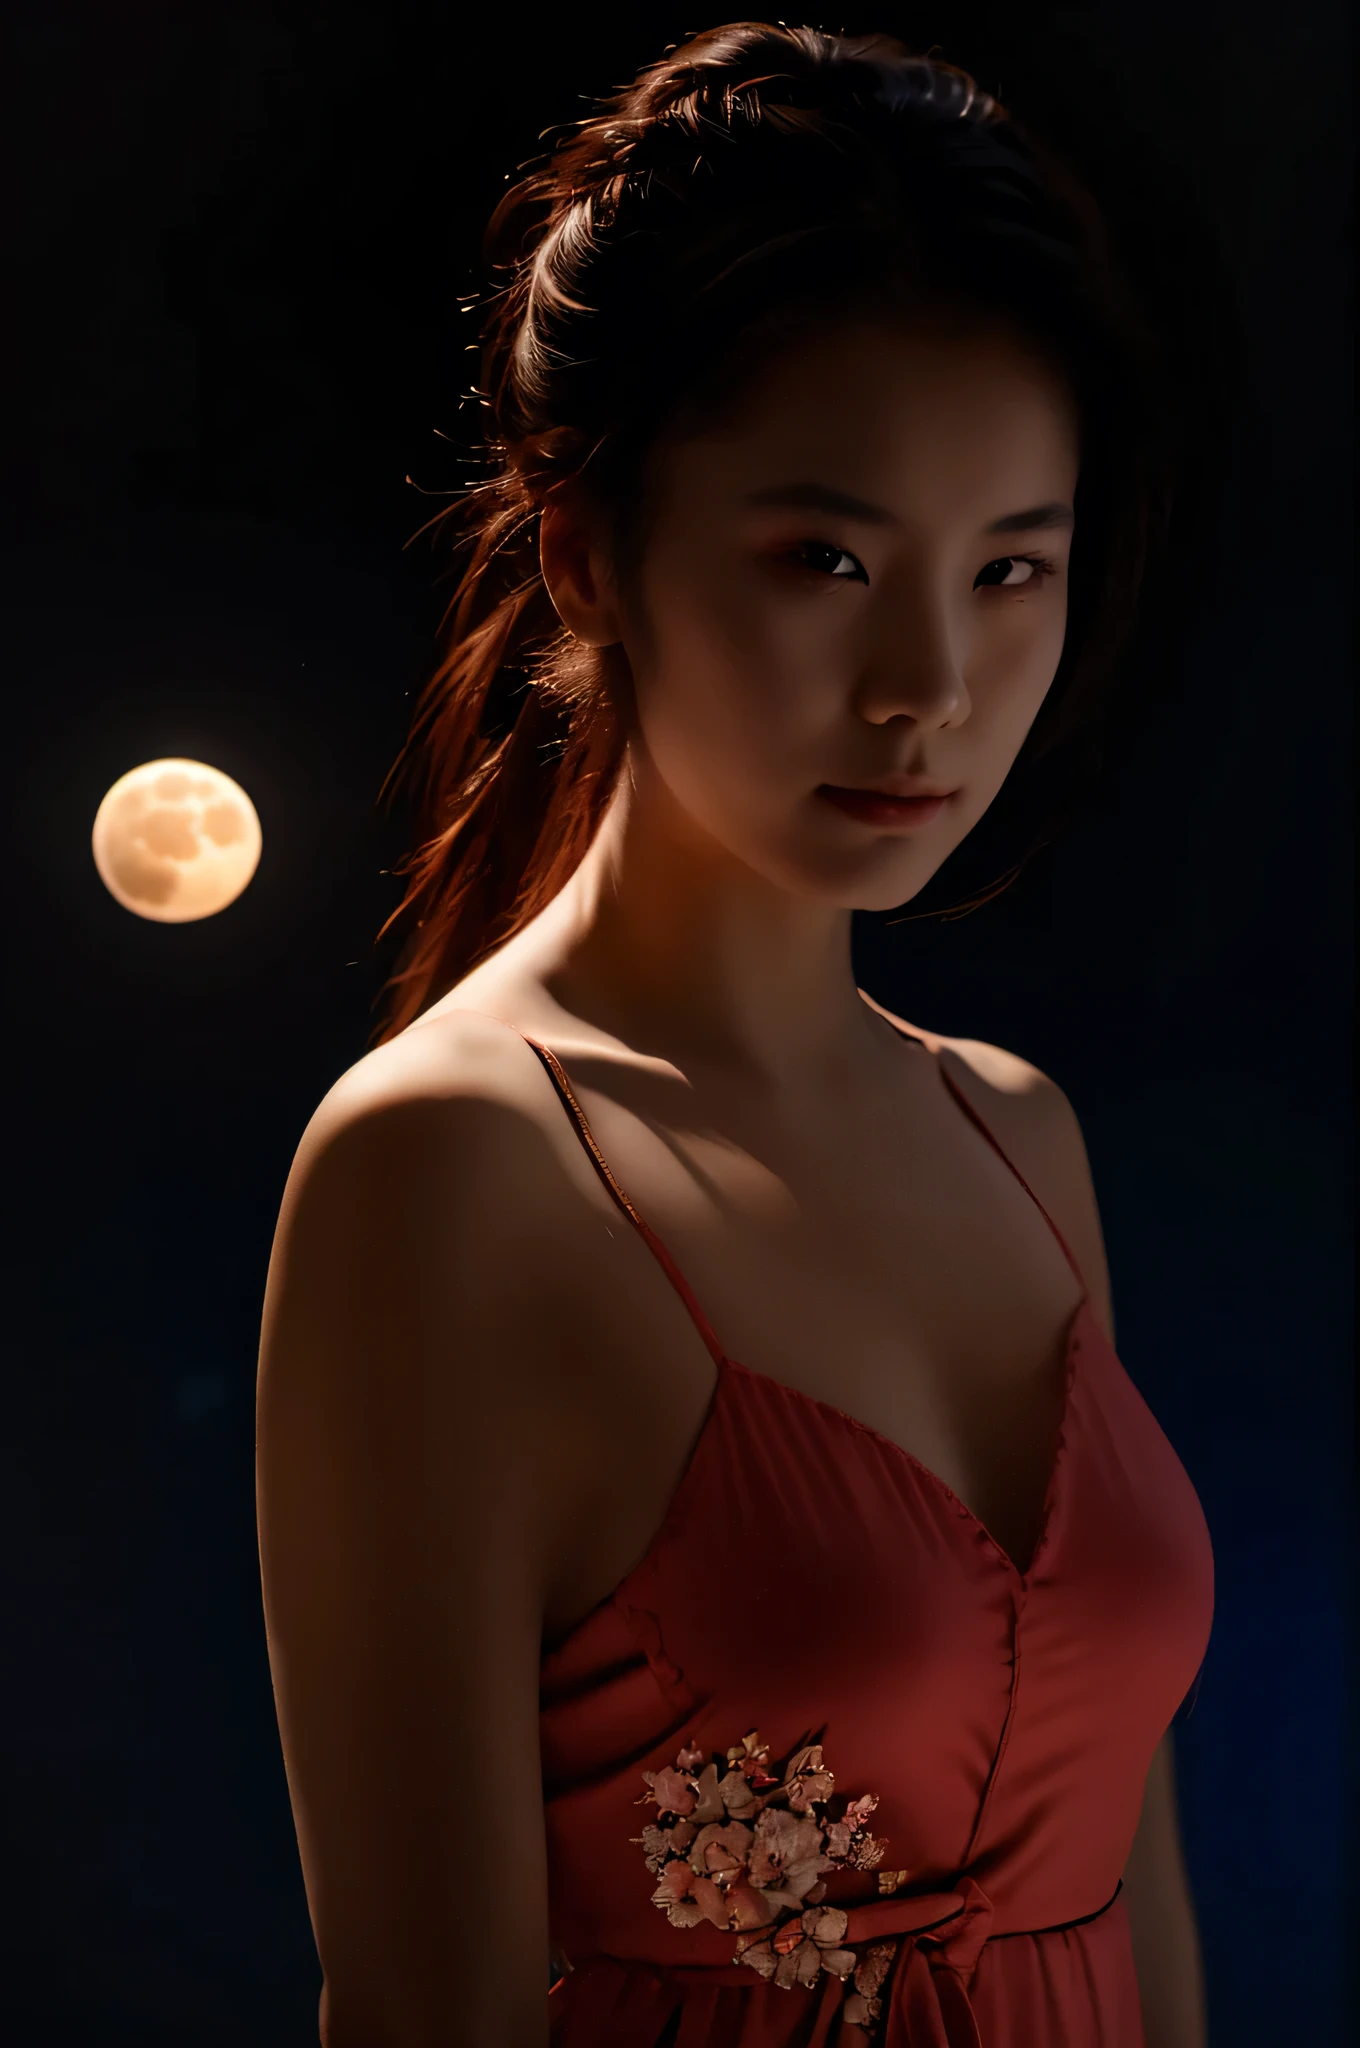 фотография. красивая японка, в китайском пеньюаре, волосы в хвосте, лицо в стеклянном шлеме, держит луну с красной аурой, Ярко-синие волосы, слегка тусклое освещение, черный фон, realistic фотография. качество материала.